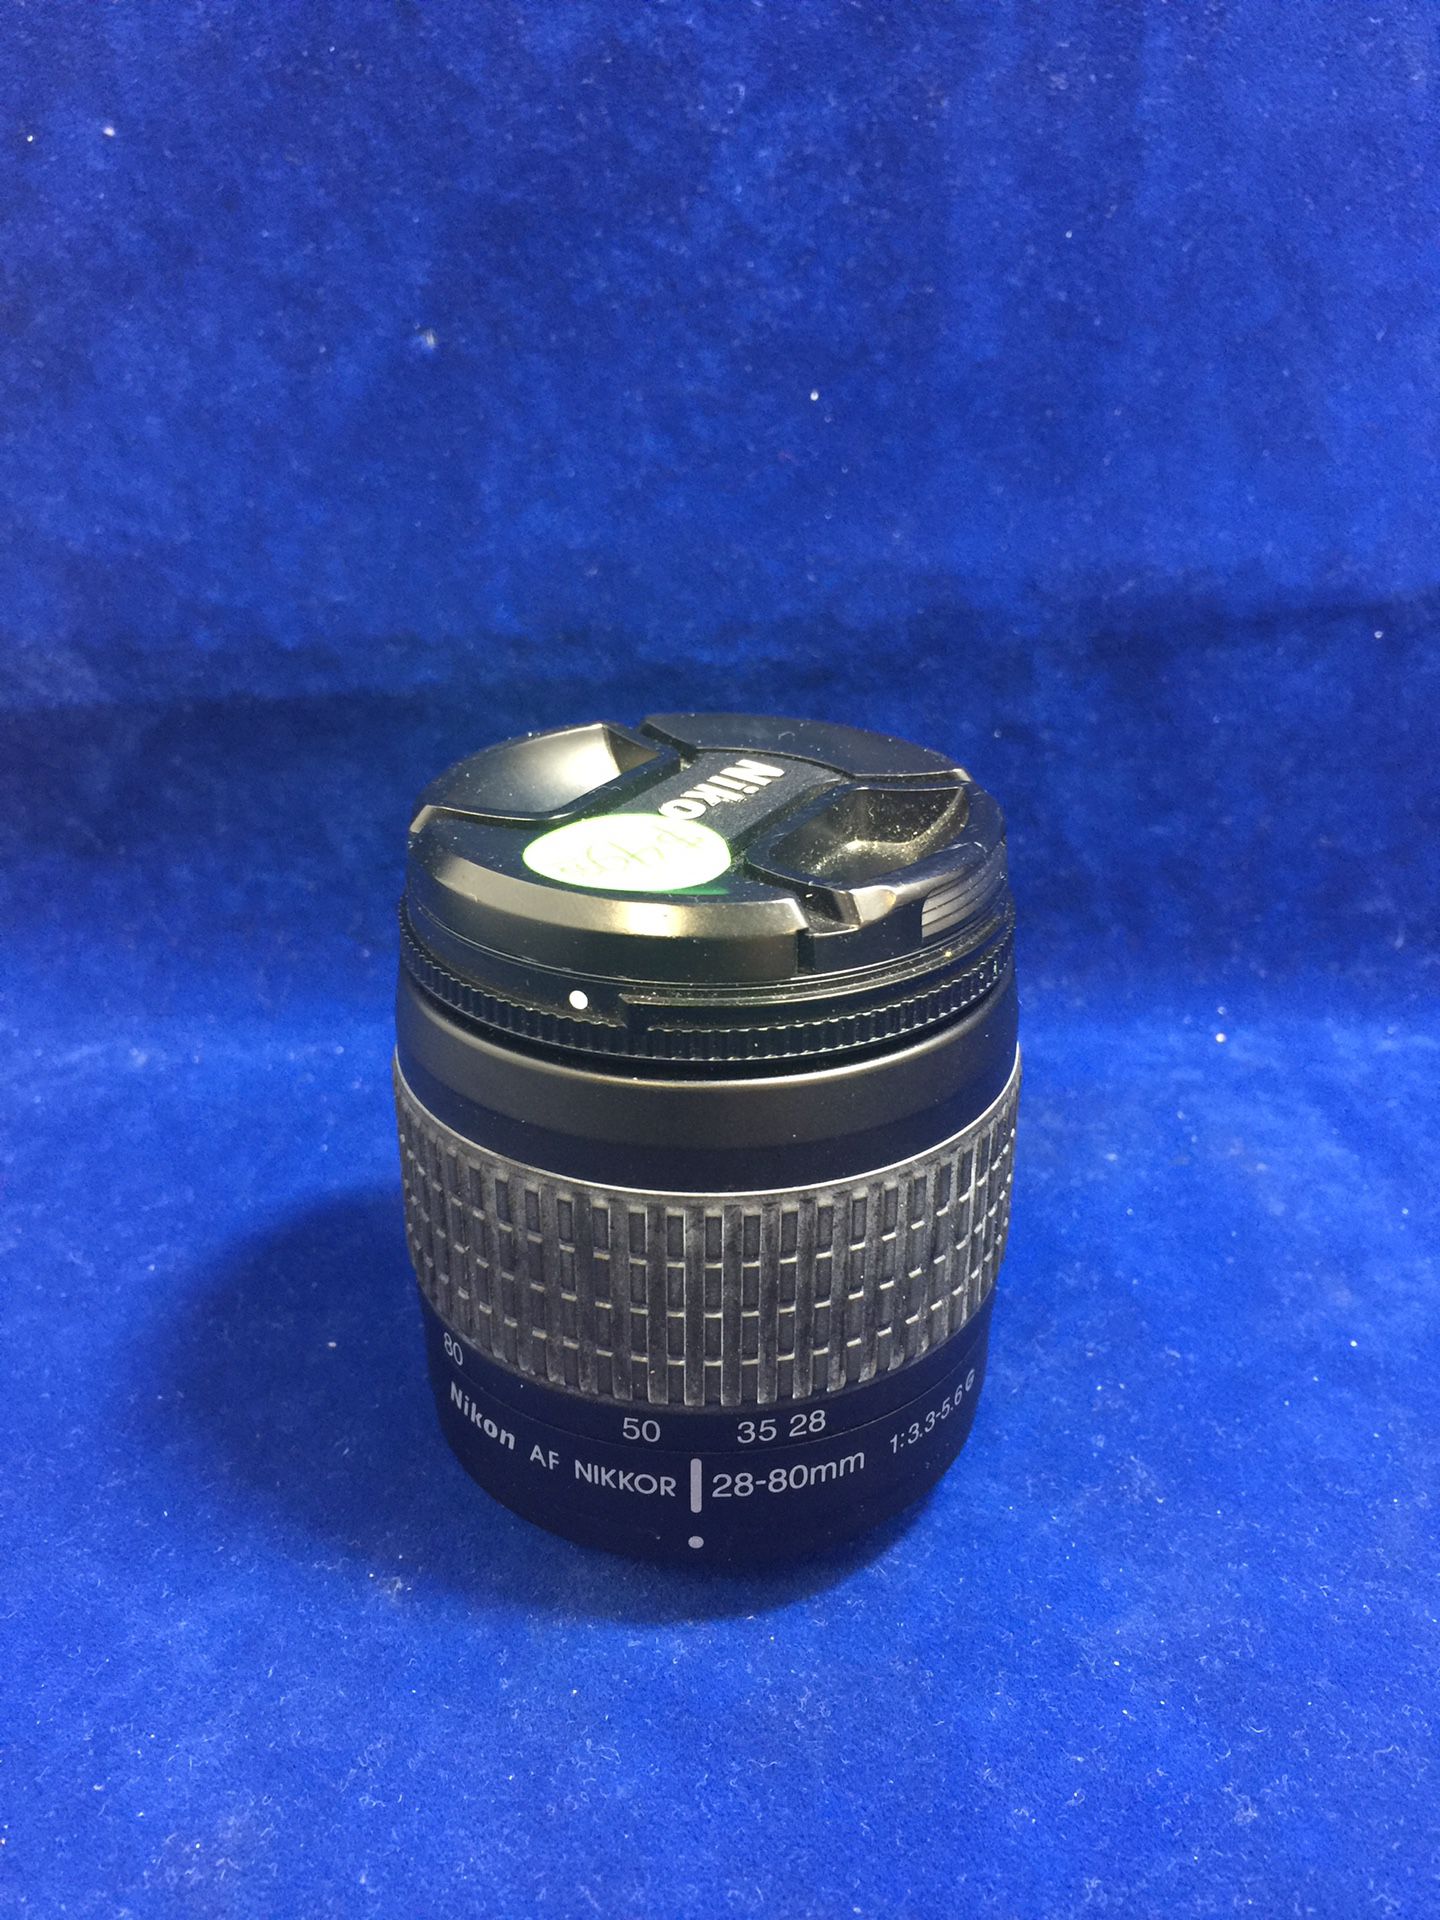 Nikon AF Nikkor 28-80mm 1:3.3-5.6 G Camera Lens